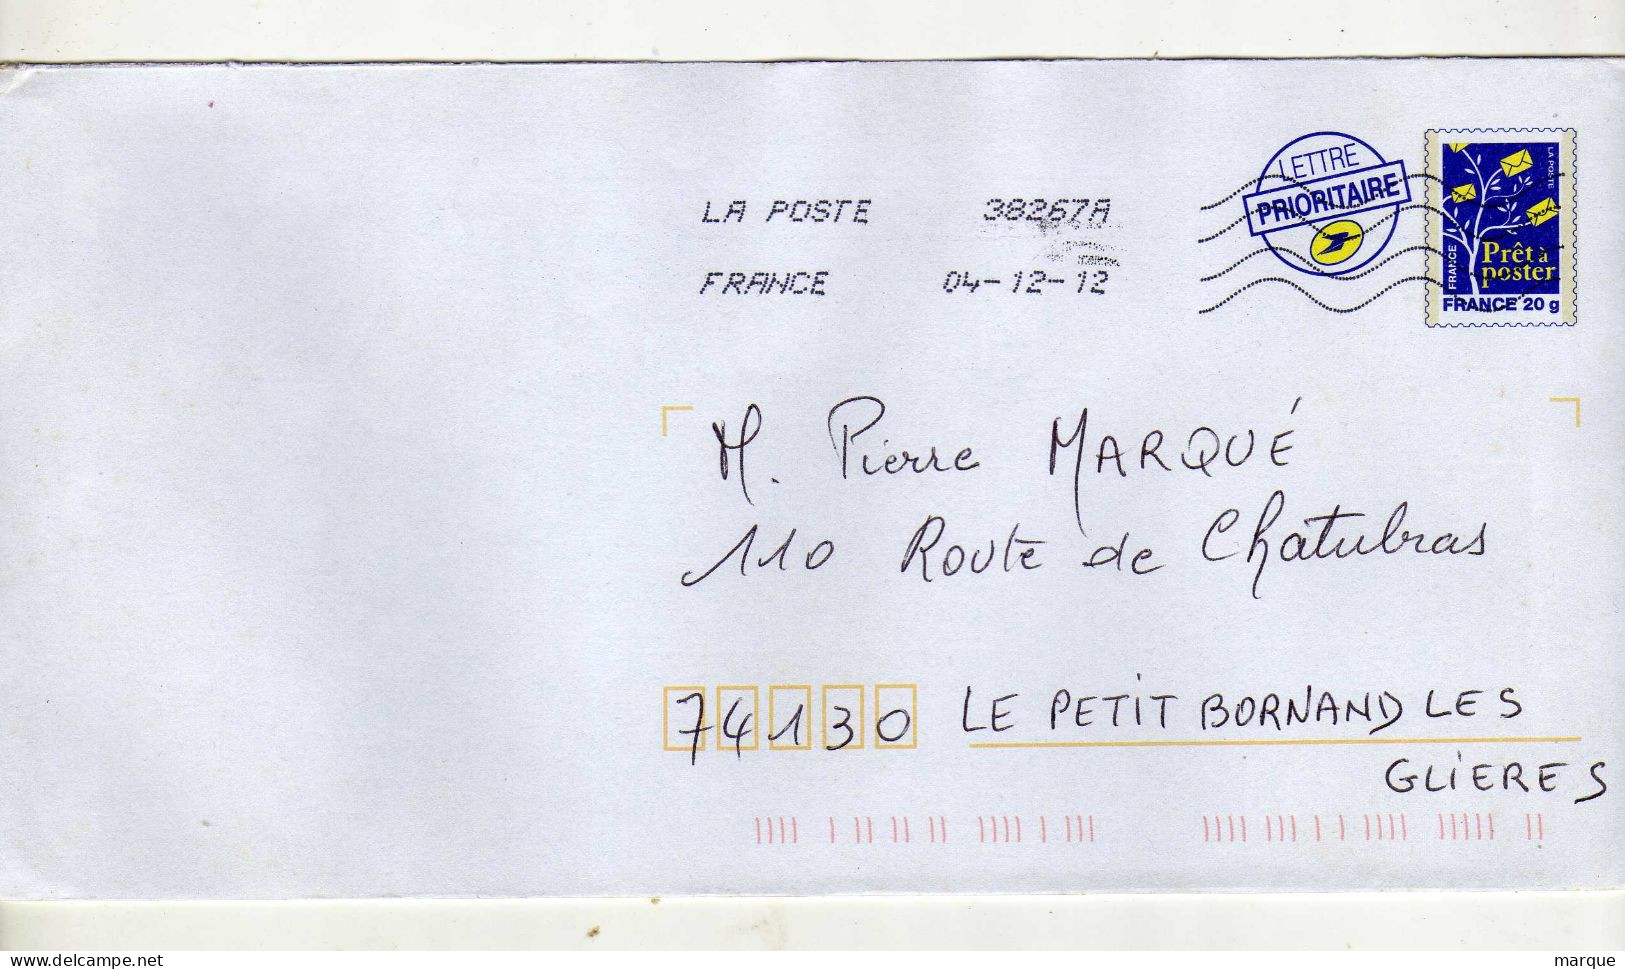 Enveloppe FRANCE Prêt à Poster Lettre Prioritaire 20g Oblitération LA POSTE 38267A 04/12/2012 - Prêts-à-poster:Overprinting/Blue Logo